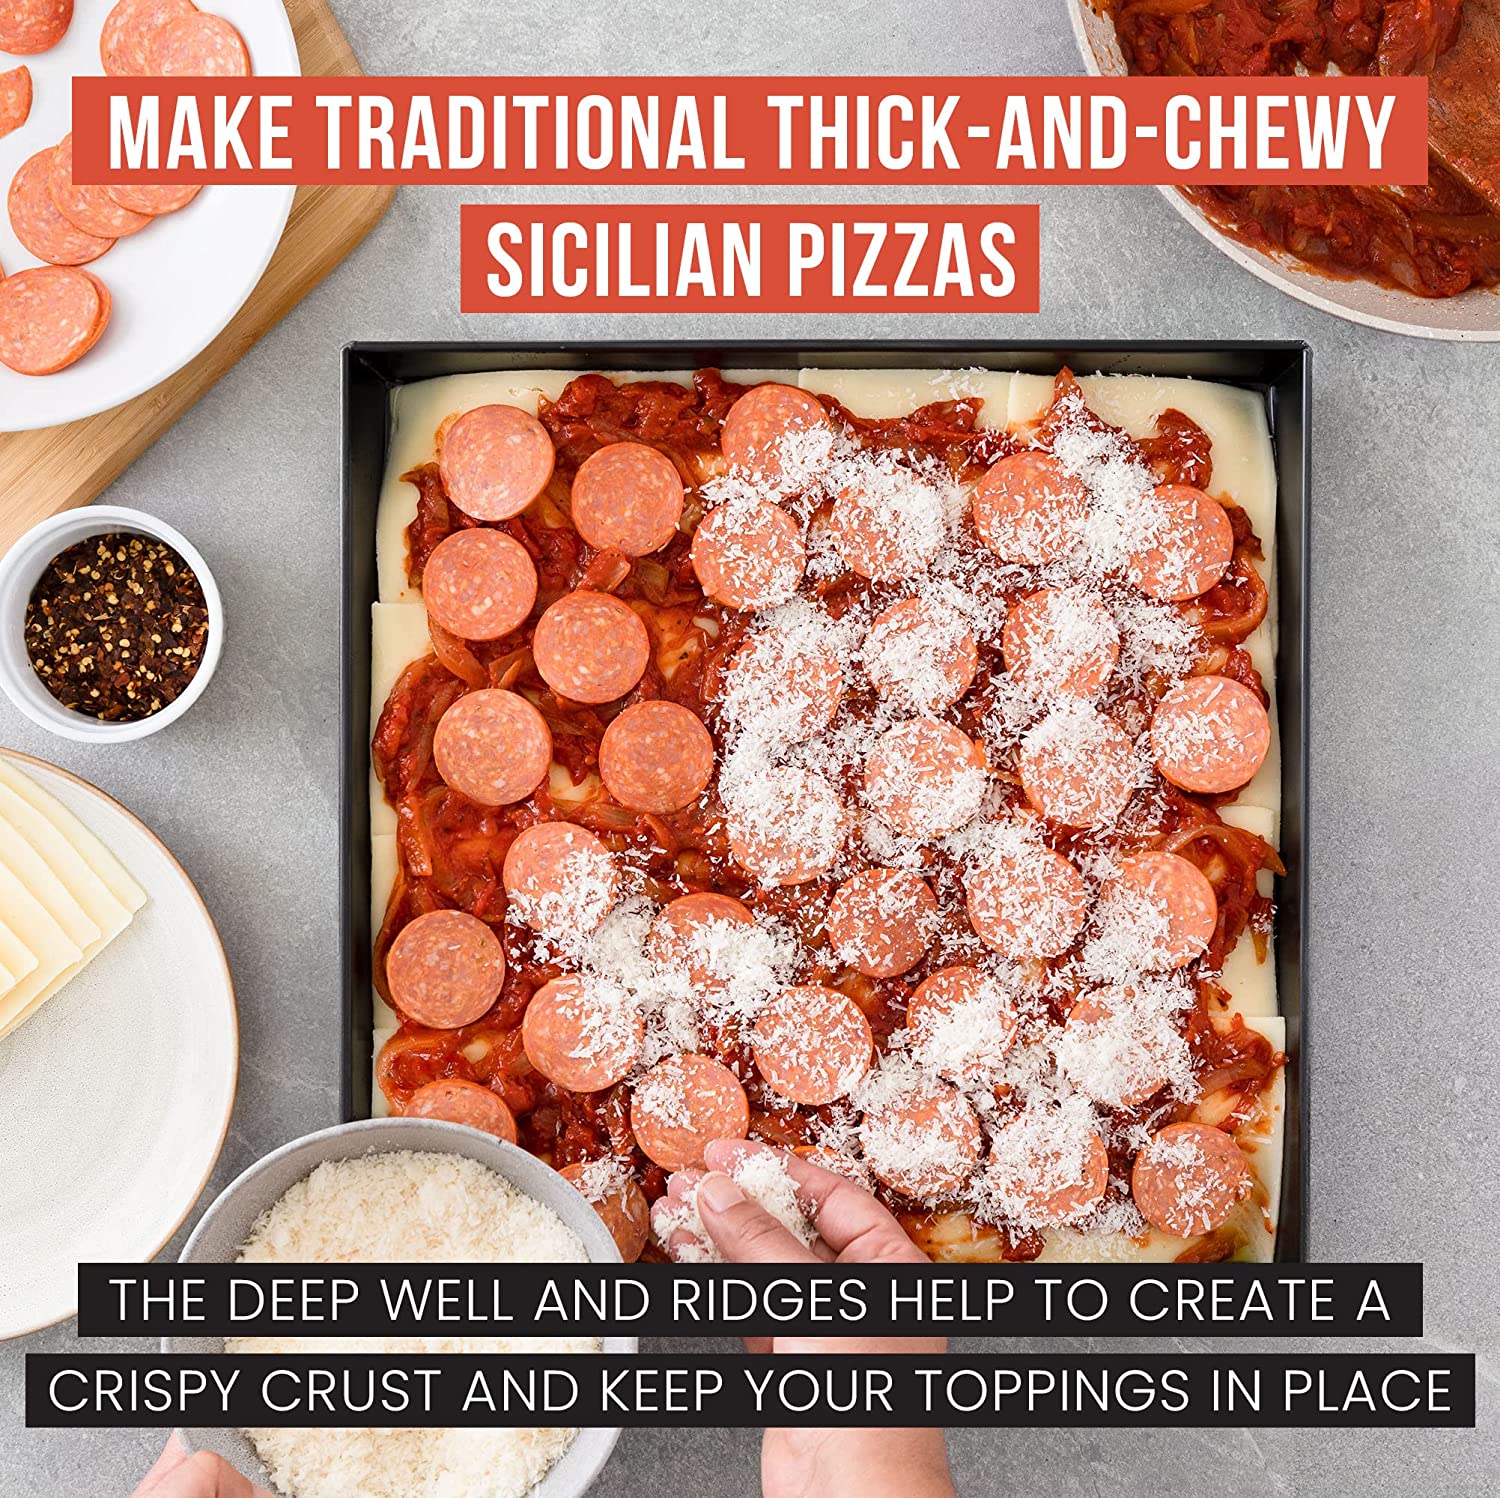 Sicilian Deep Dish Square Non-stick Pizza Pan, 13.2 x 13.2 Inch